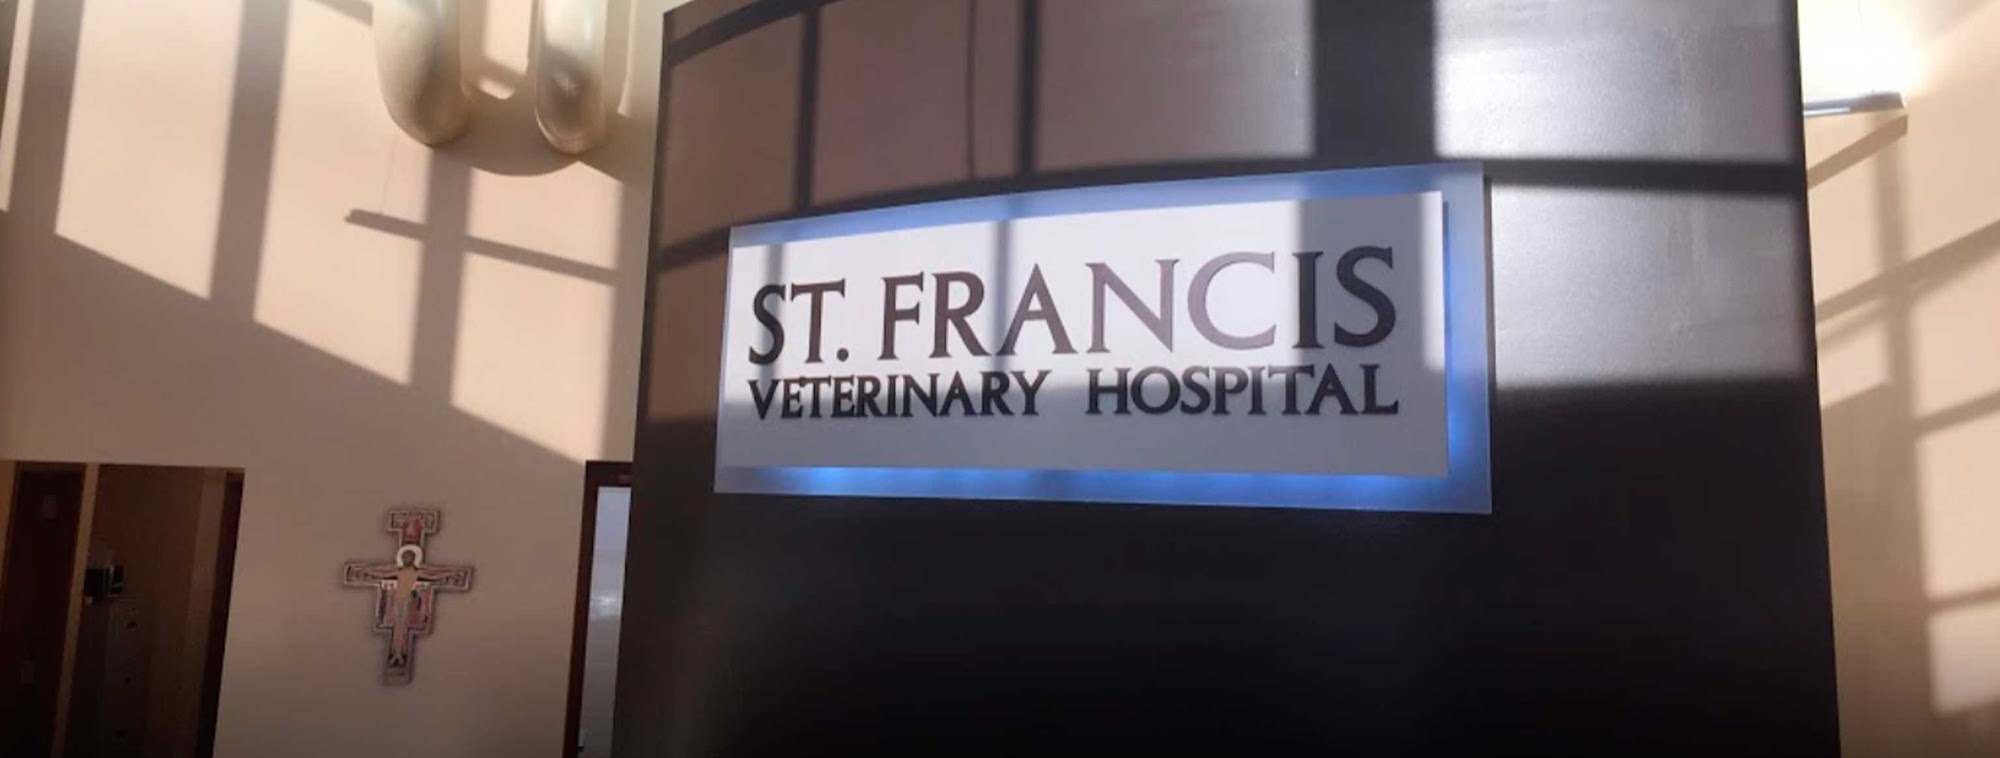 St Francis Veterinary Hospital